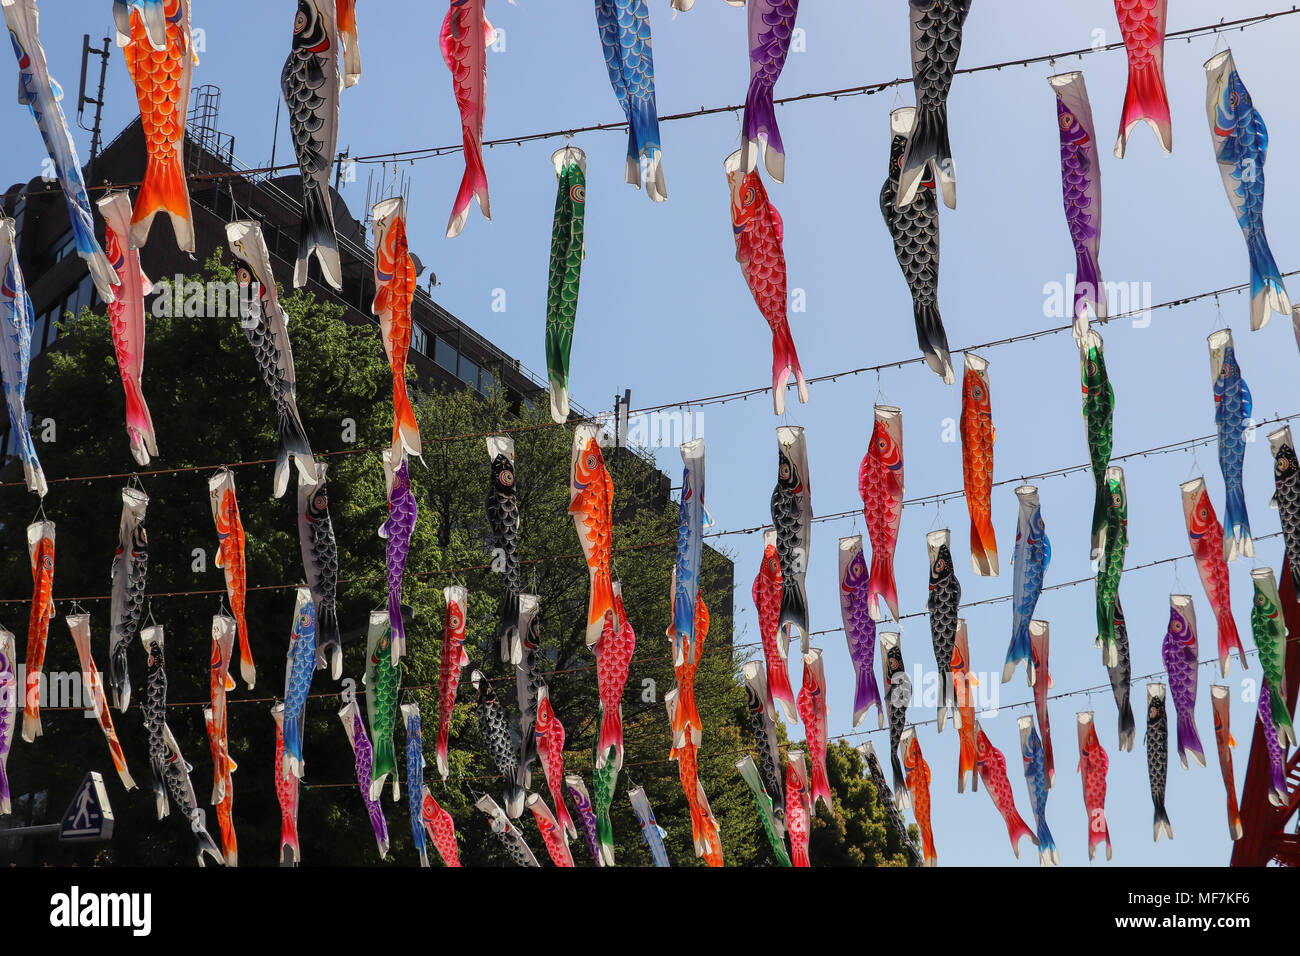 De nombreux poissons de papier coloré ou de lanternes en papier accrocher sur les cordes en diagonale au-dessus de l'afficheur contre un ciel bleu ; célébrer la Fête des enfants au Japon. Banque D'Images